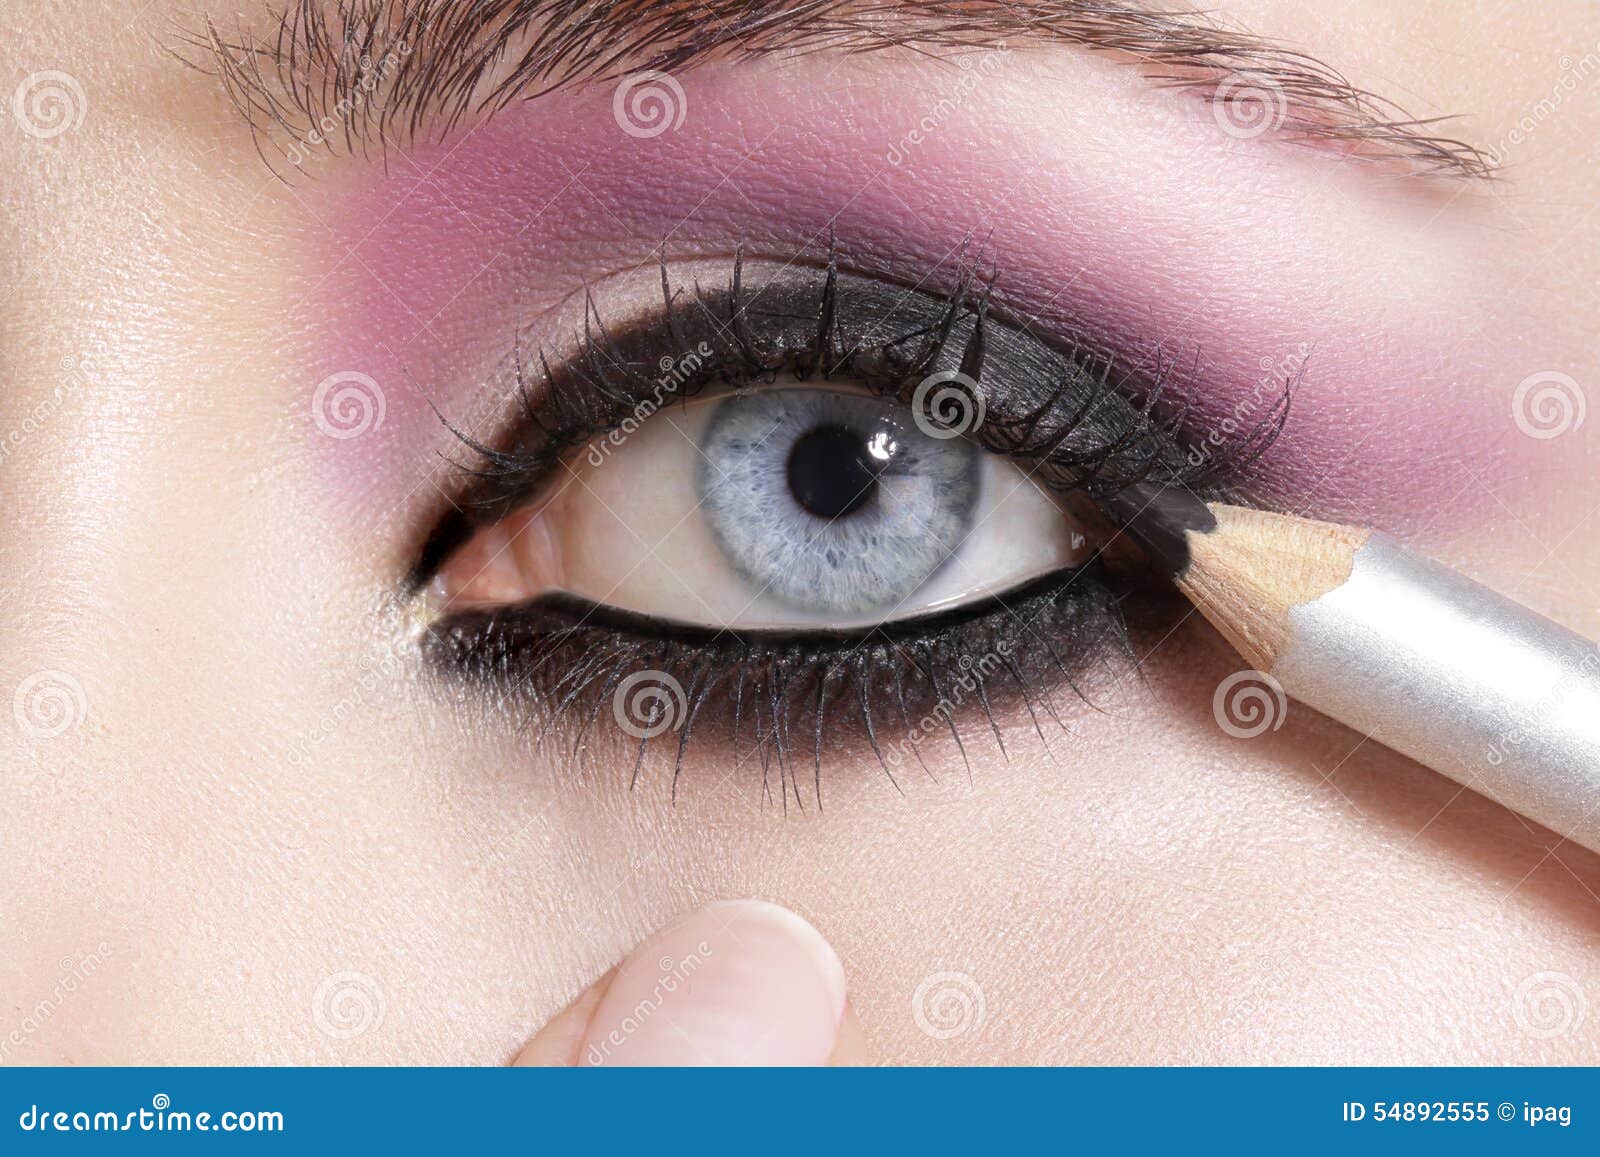 Close Up On Eyes Making Colorful Eyeshadows And Eyeliner Stock